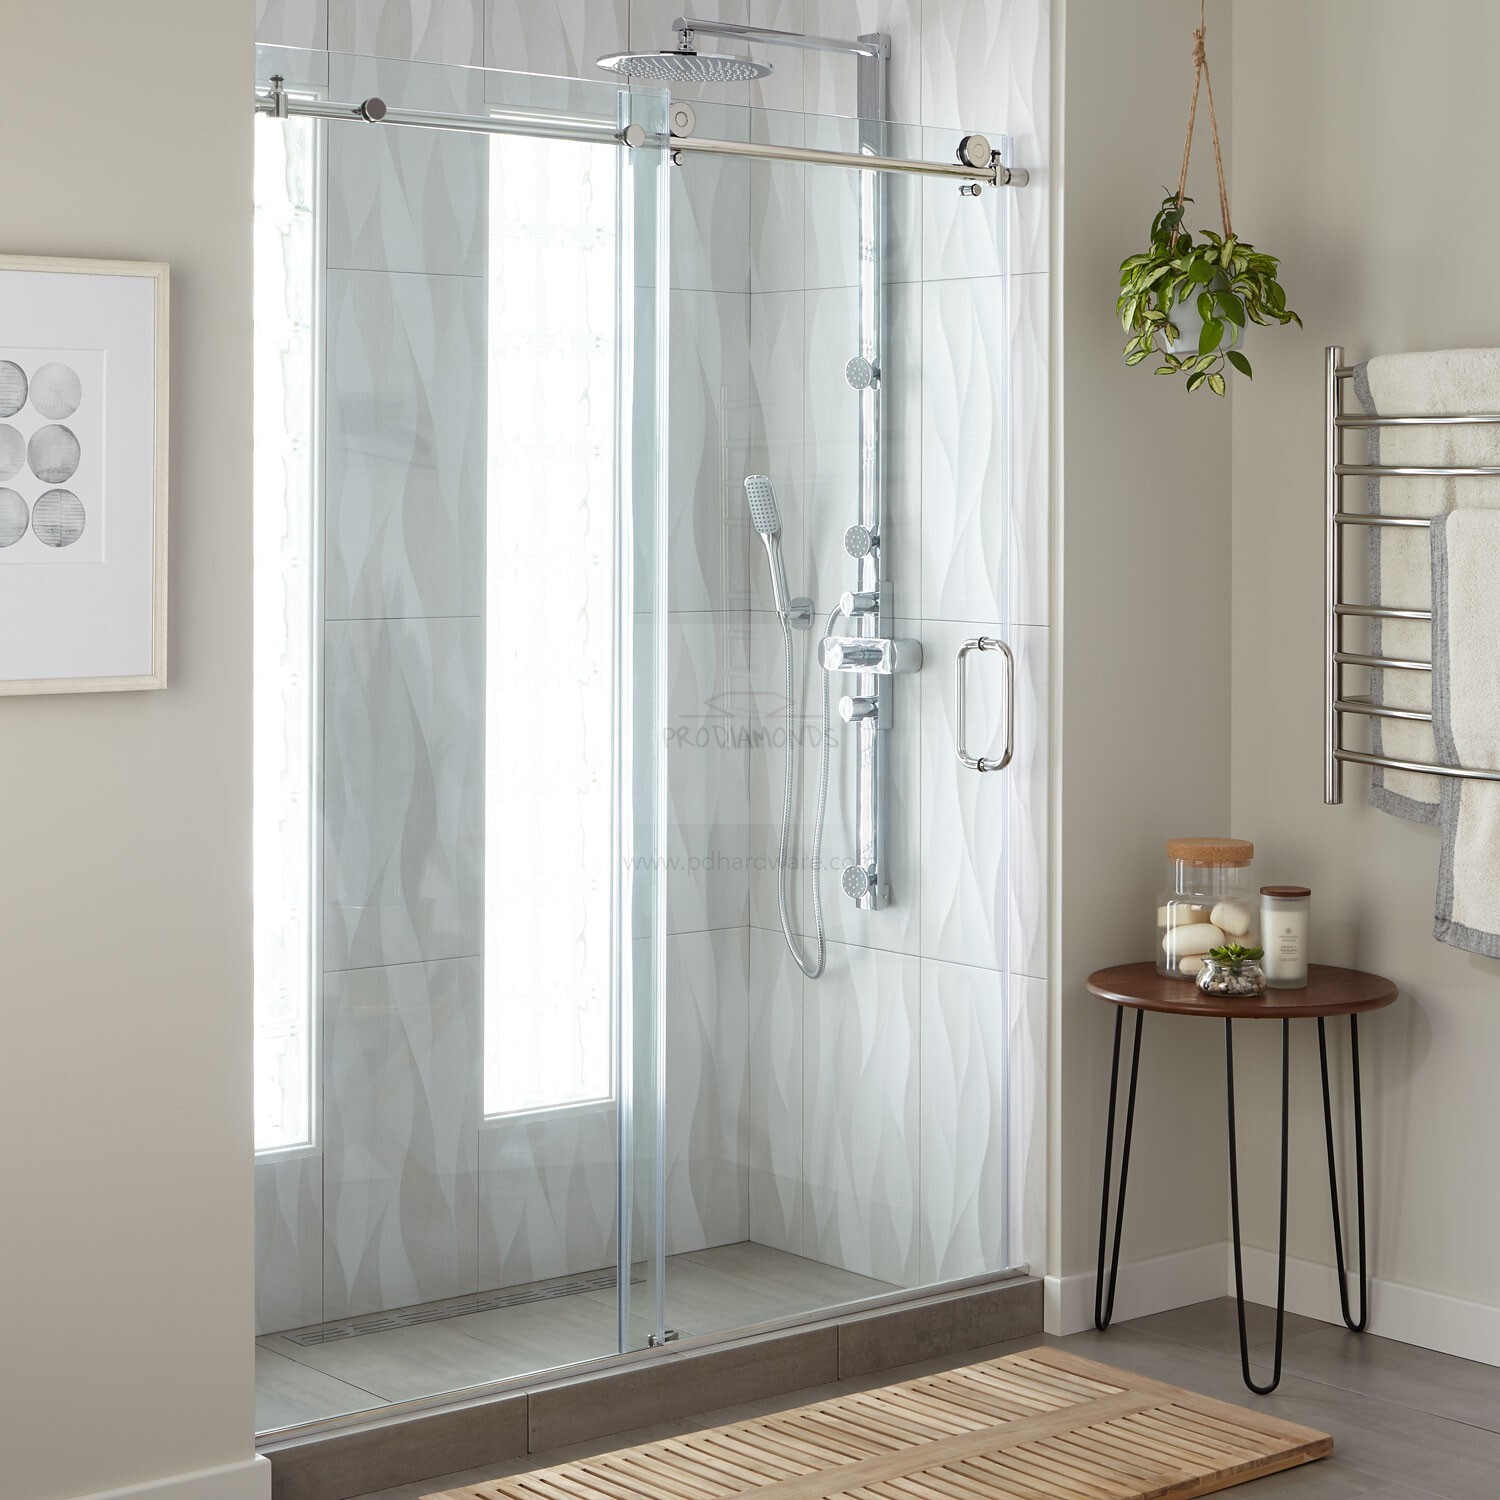 Sistema de puerta de ducha corrediza estándar de 180 grados Crescent Series